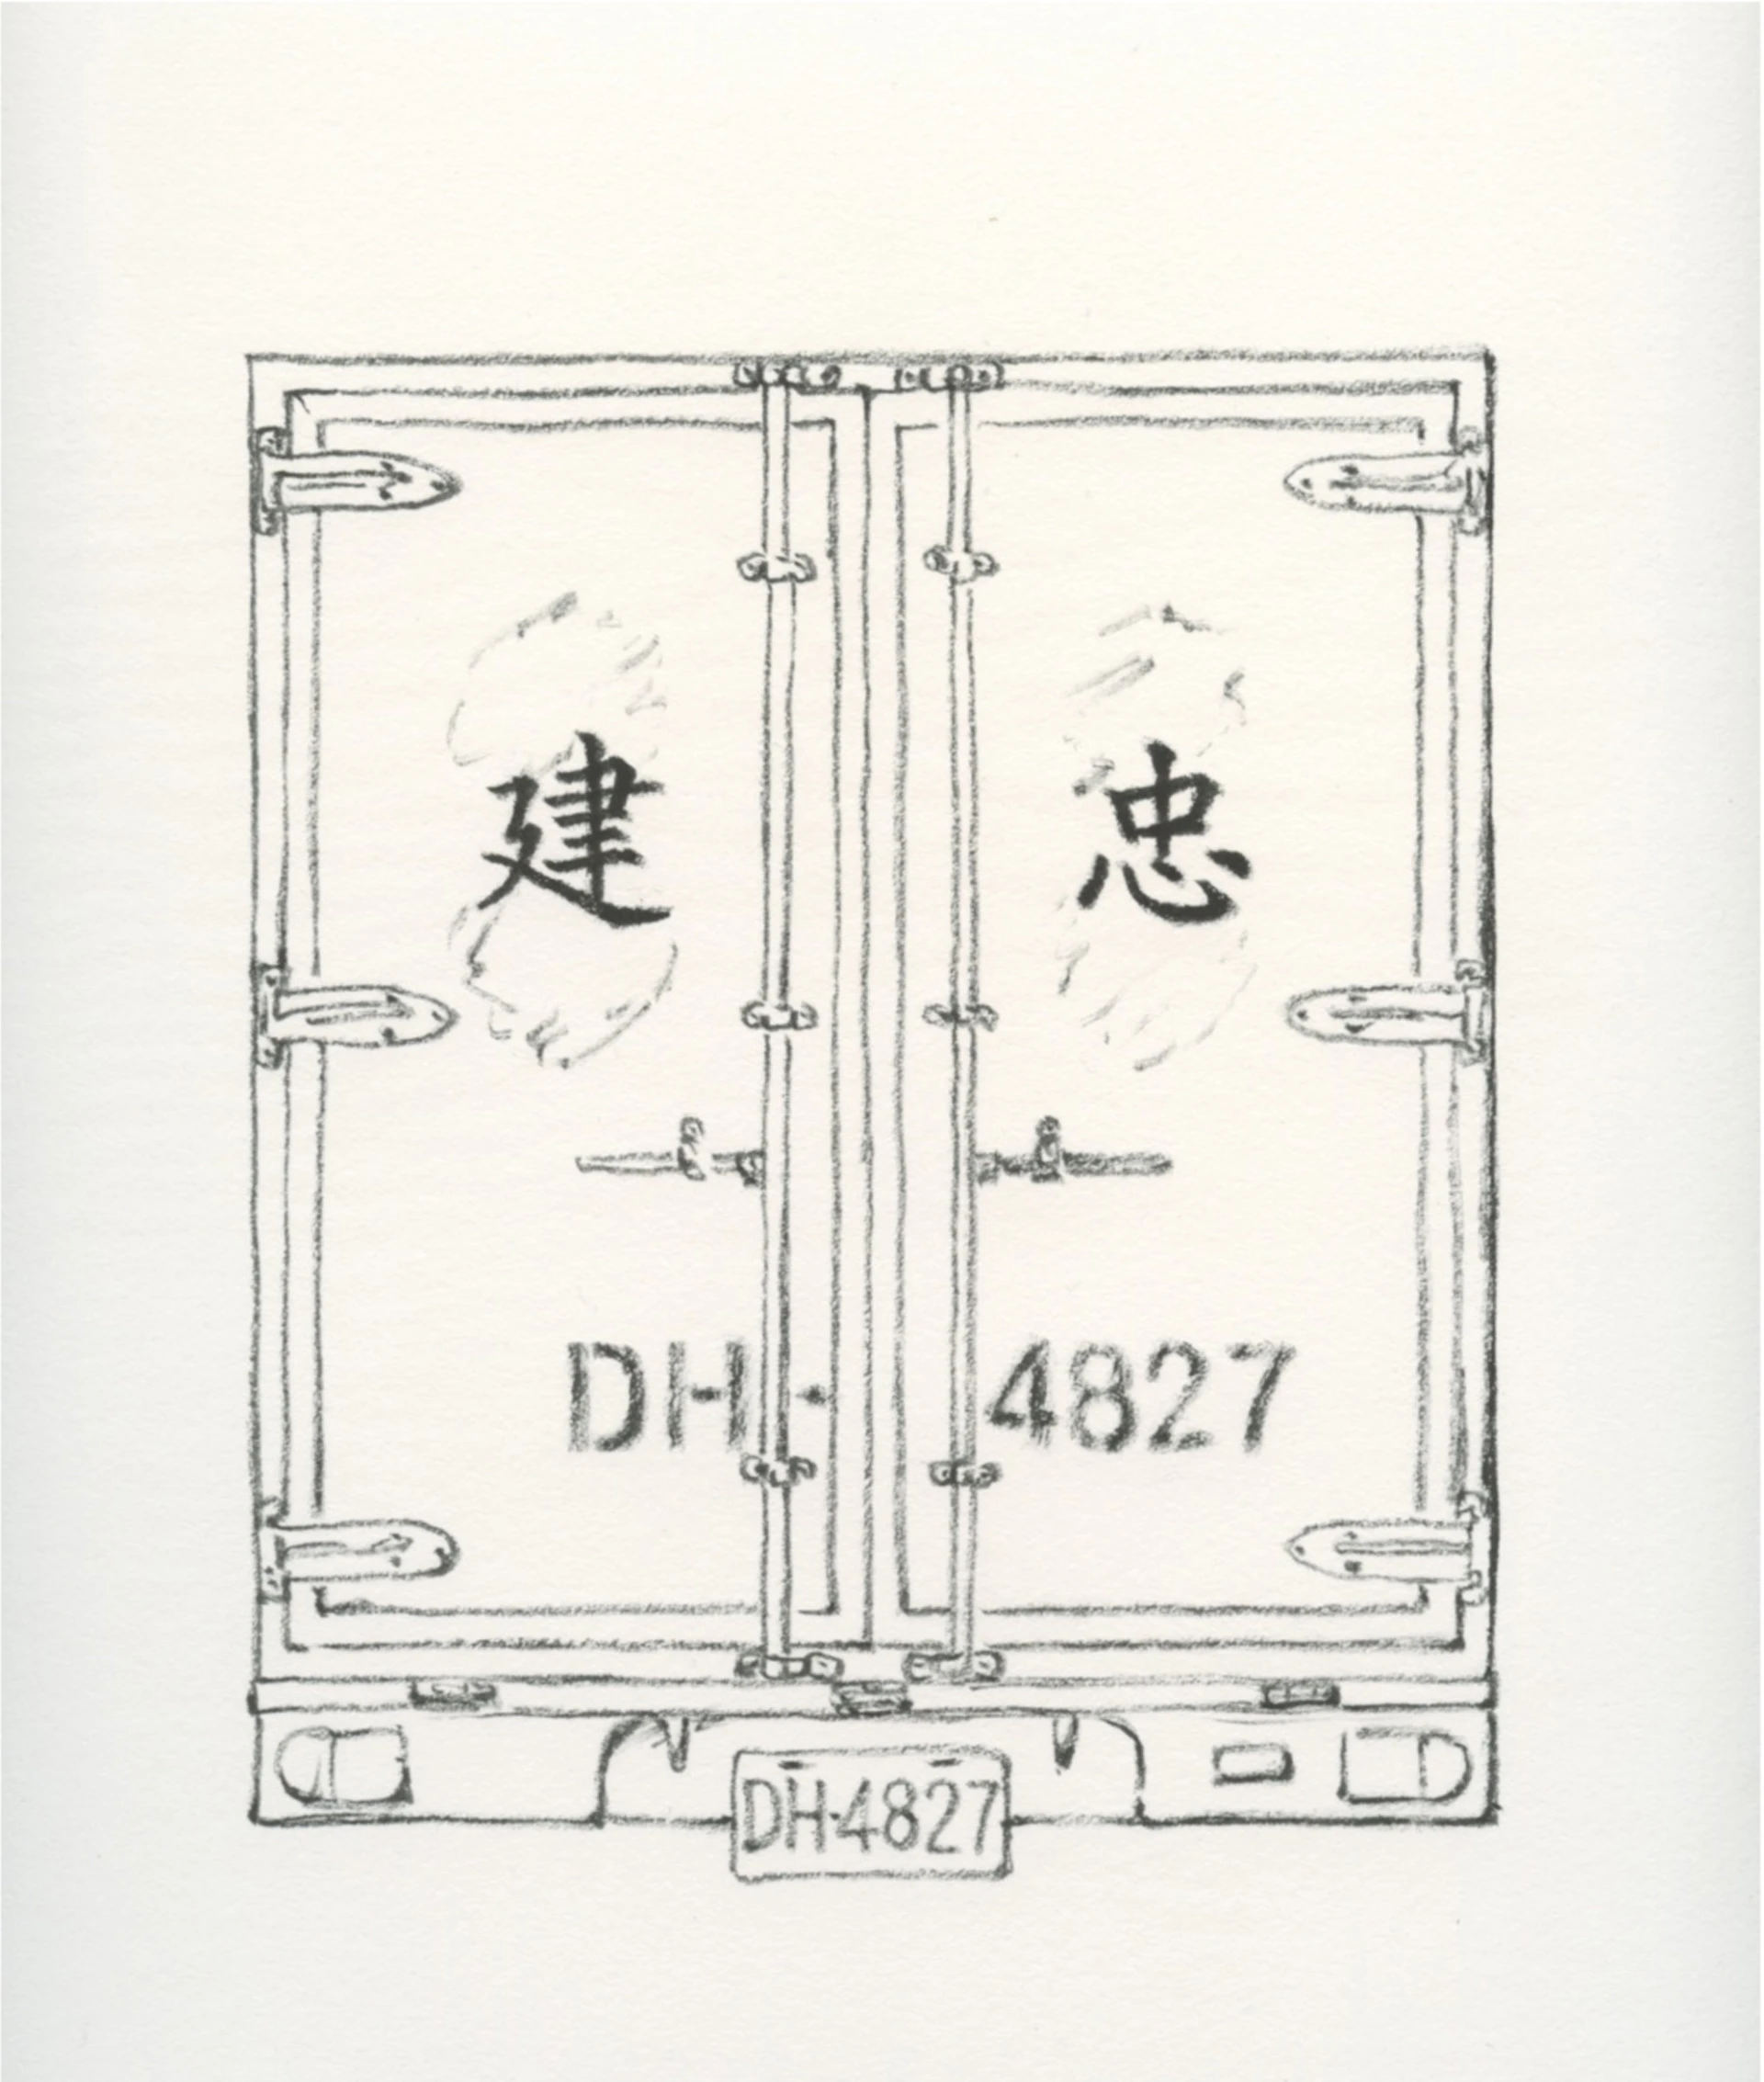 《貨車箱DH−4827》草稿-圖片